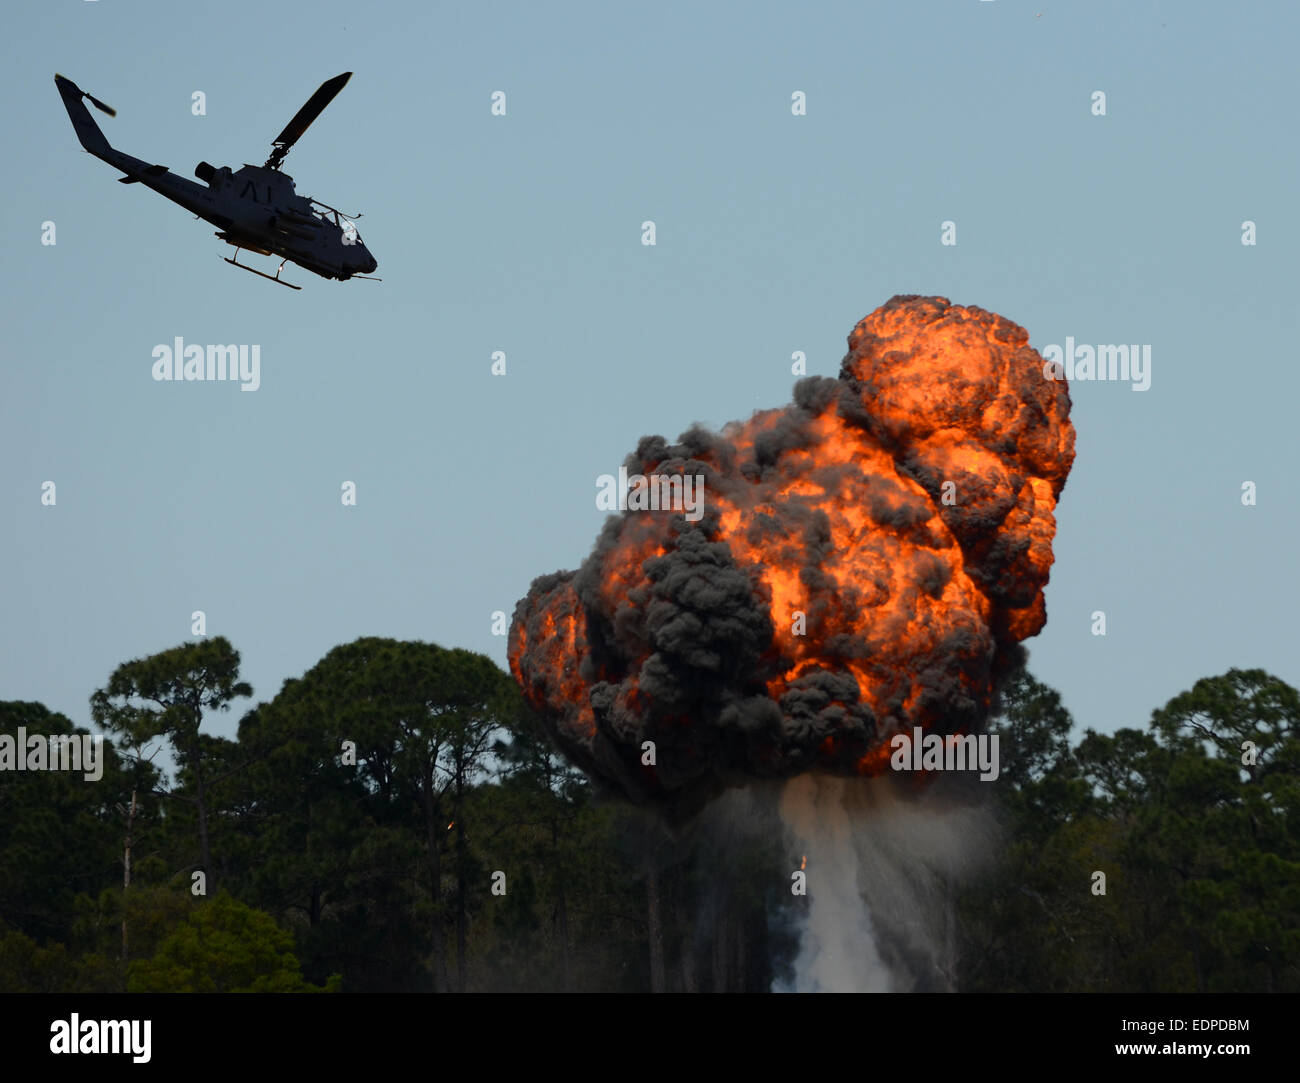 Hubschrauber fliegen über feurige Explosion und Feuerball Stockfoto